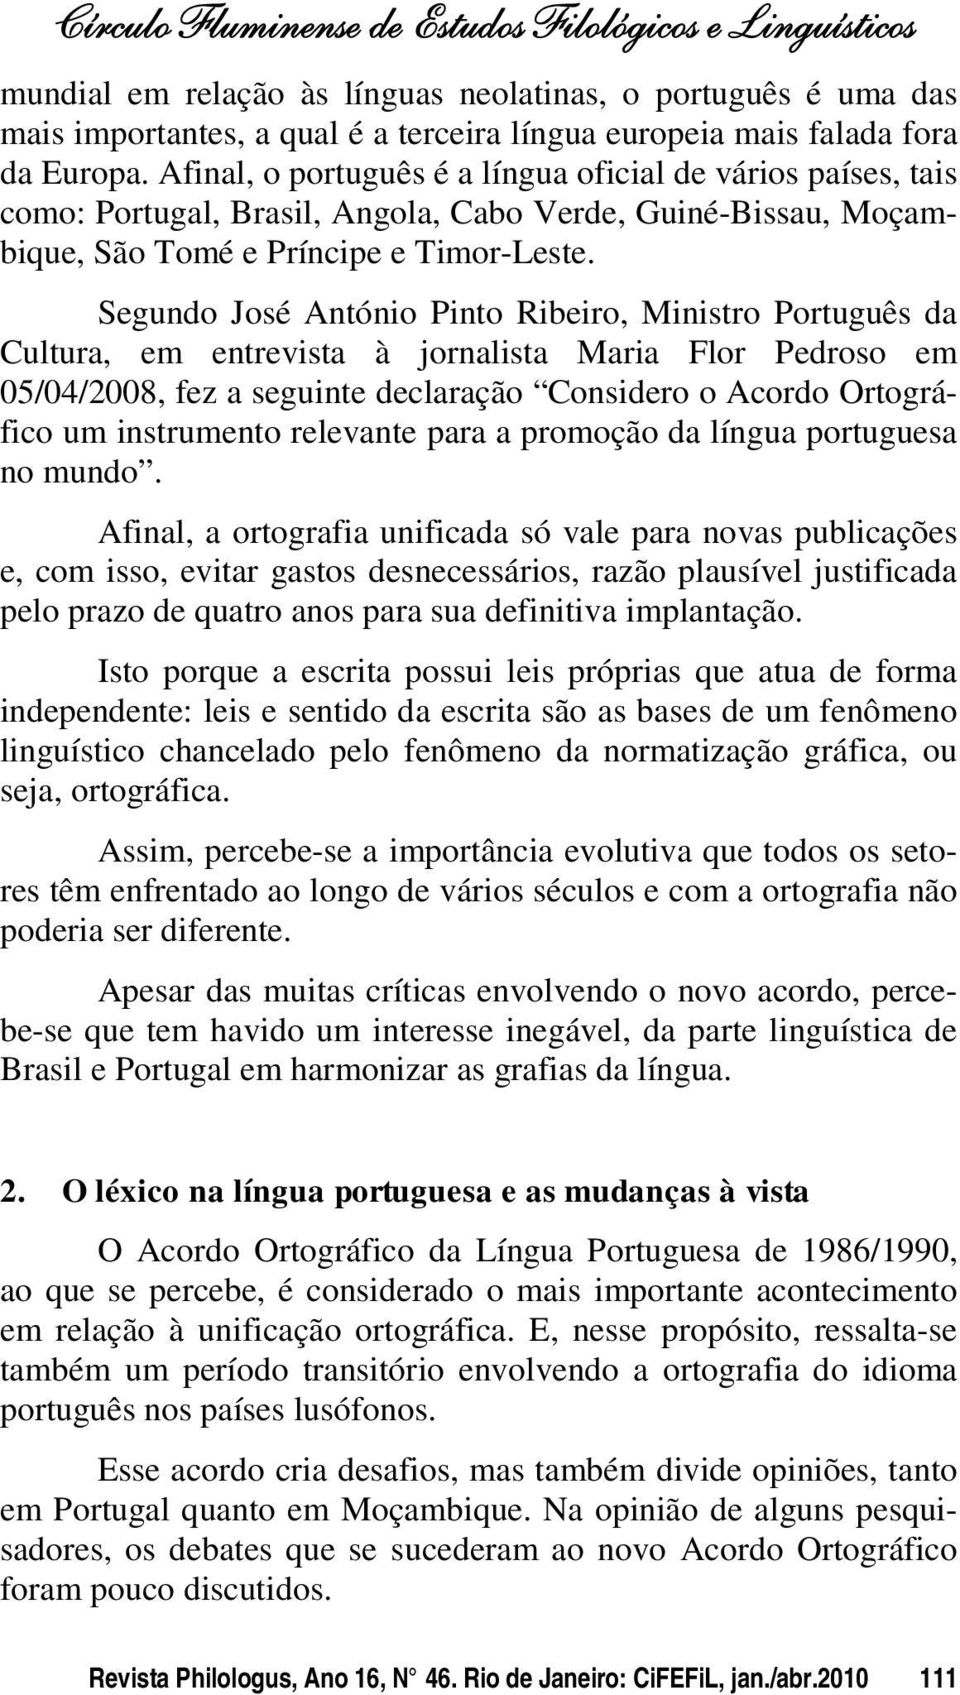 Segundo José António Pinto Ribeiro, Ministro Português da Cultura, em entrevista à jornalista Maria Flor Pedroso em 05/04/2008, fez a seguinte declaração Considero o Acordo Ortográfico um instrumento